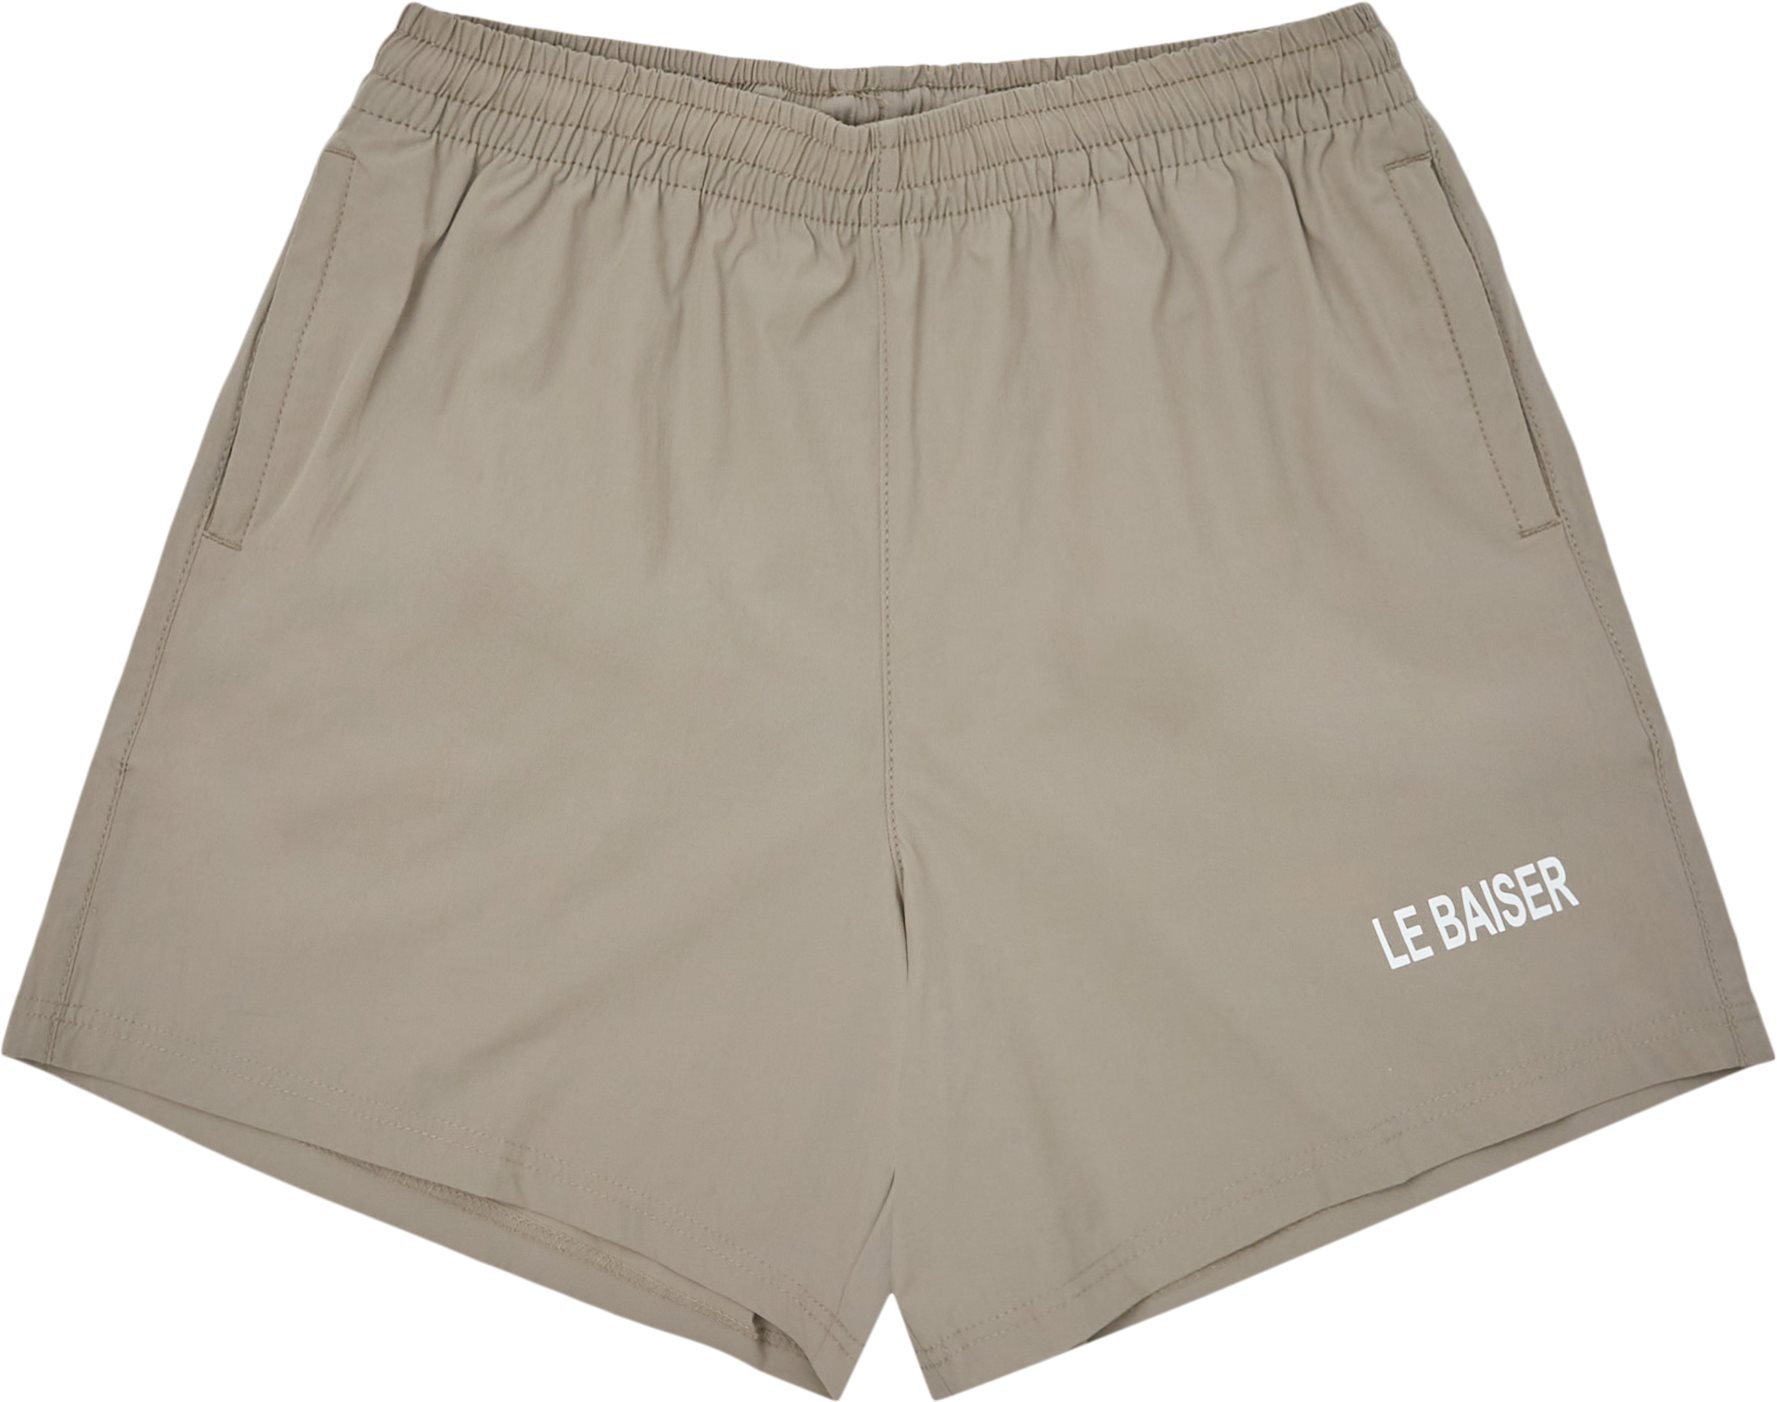 Fraise Shorts - Shorts - Regular fit - Sand